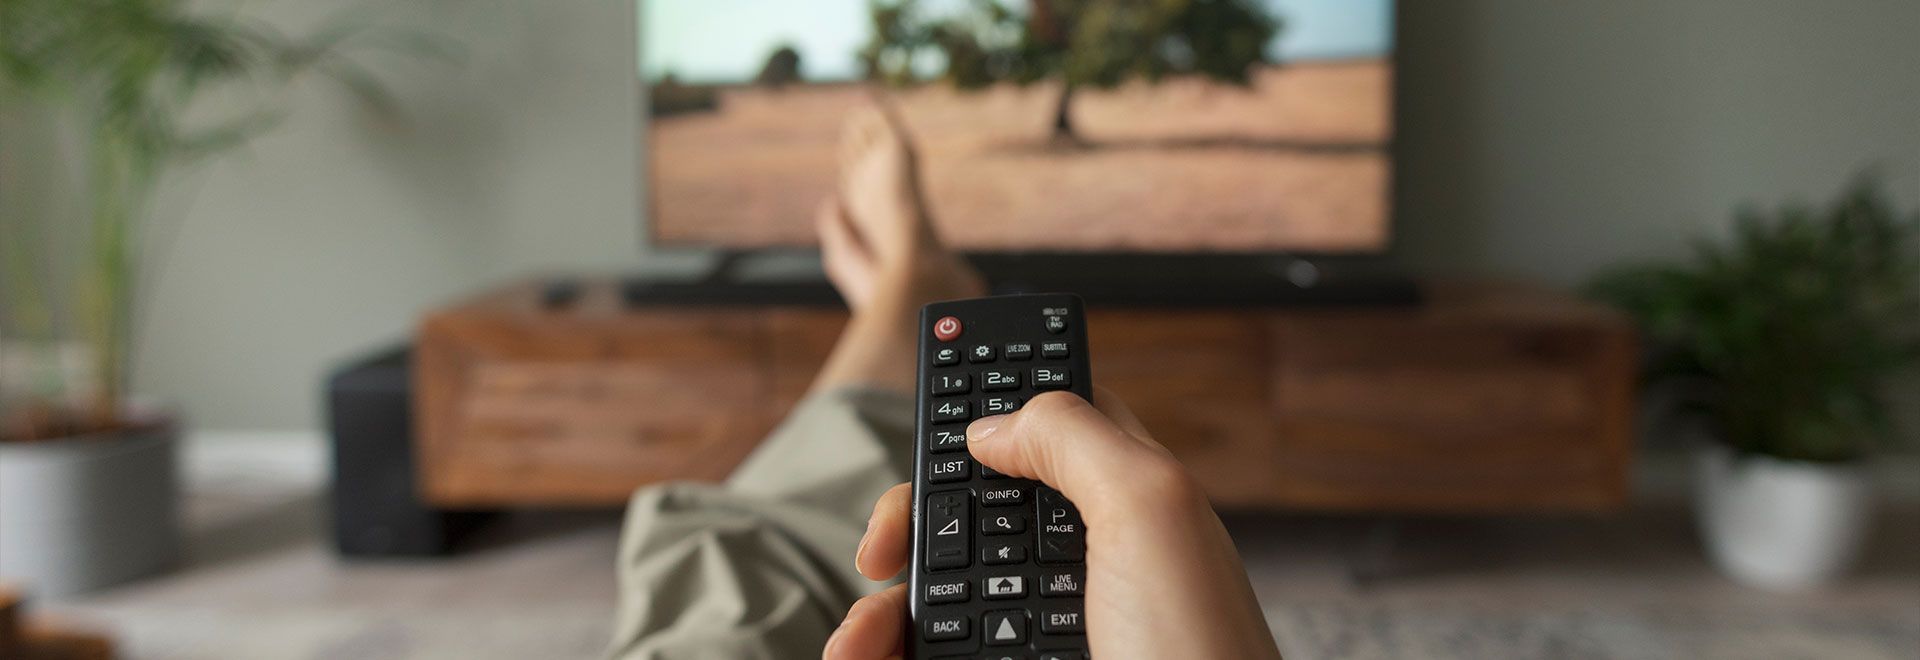 Télécommande de télévision tenue dans la main d'une personne assise dans un canapé